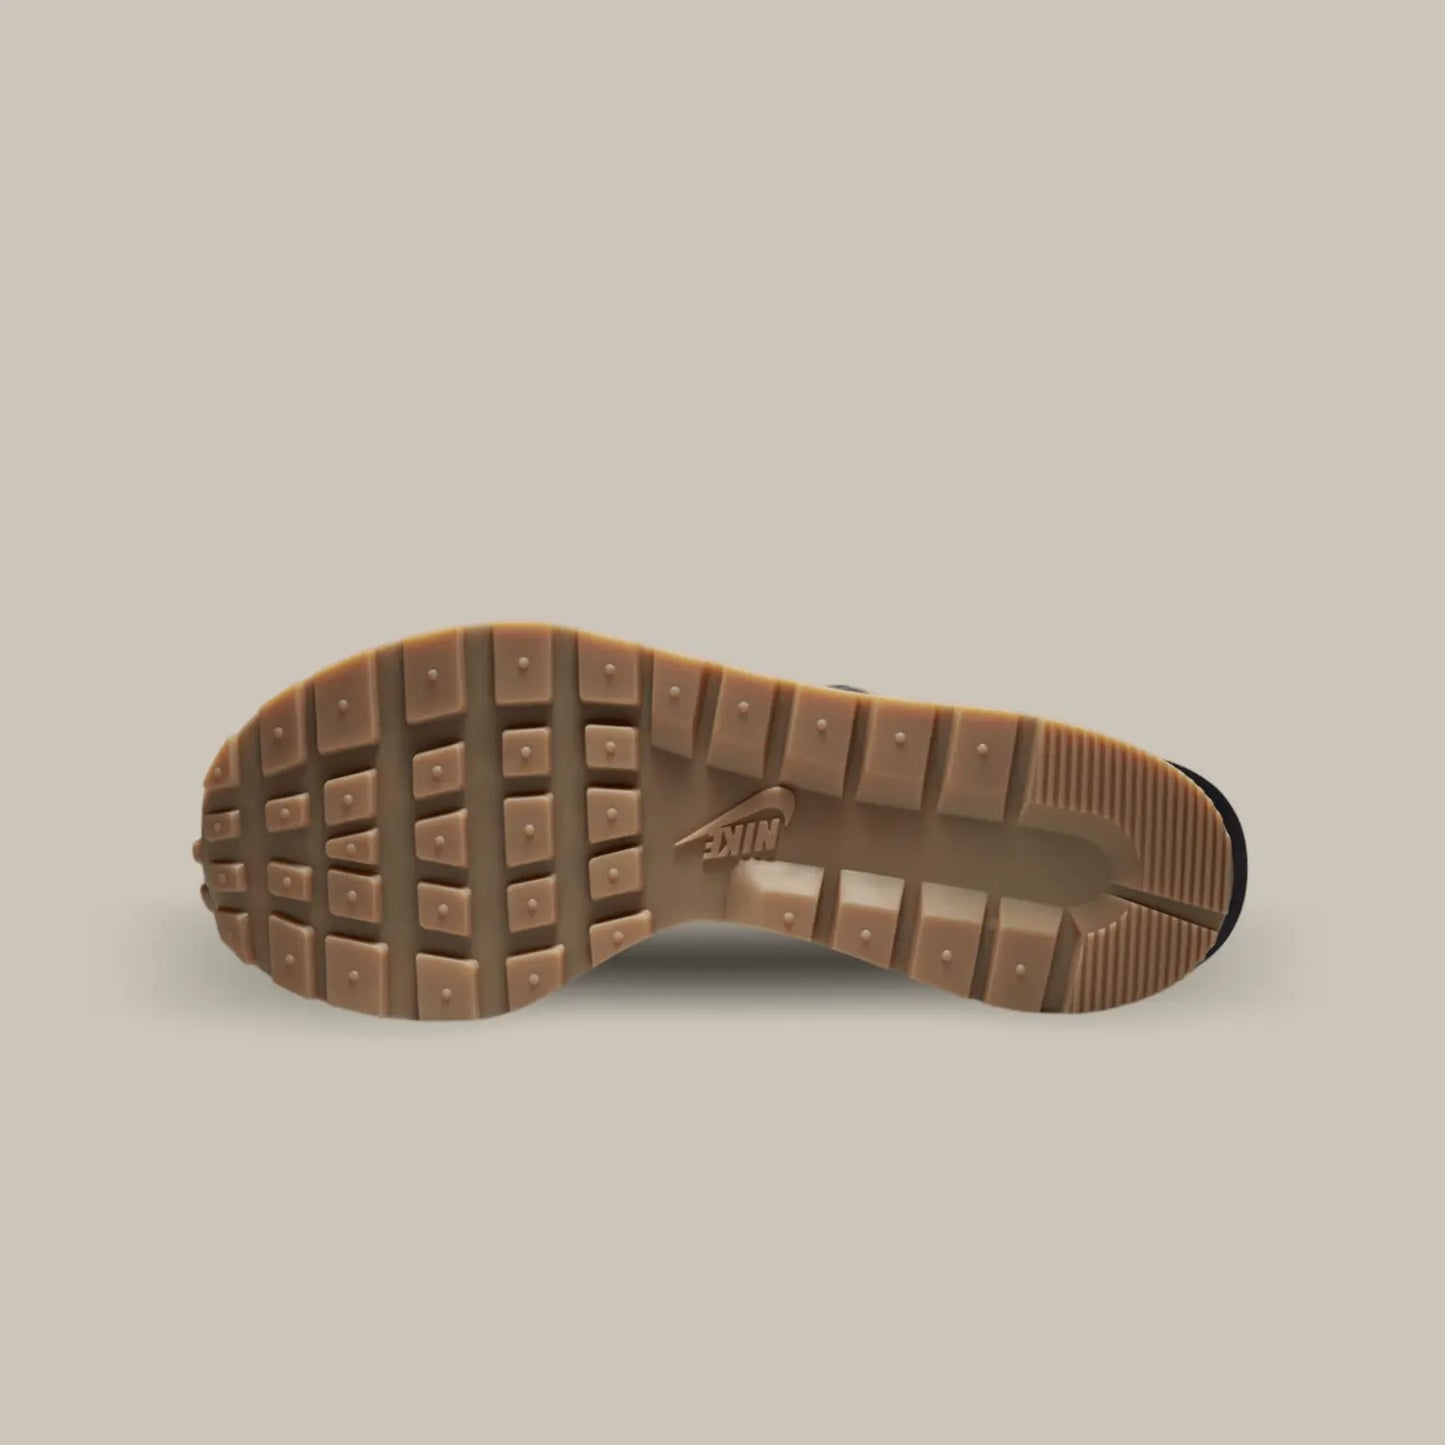 La semelle de la Nike Vaporwaffle Sacai Black Gum de couleur marron.